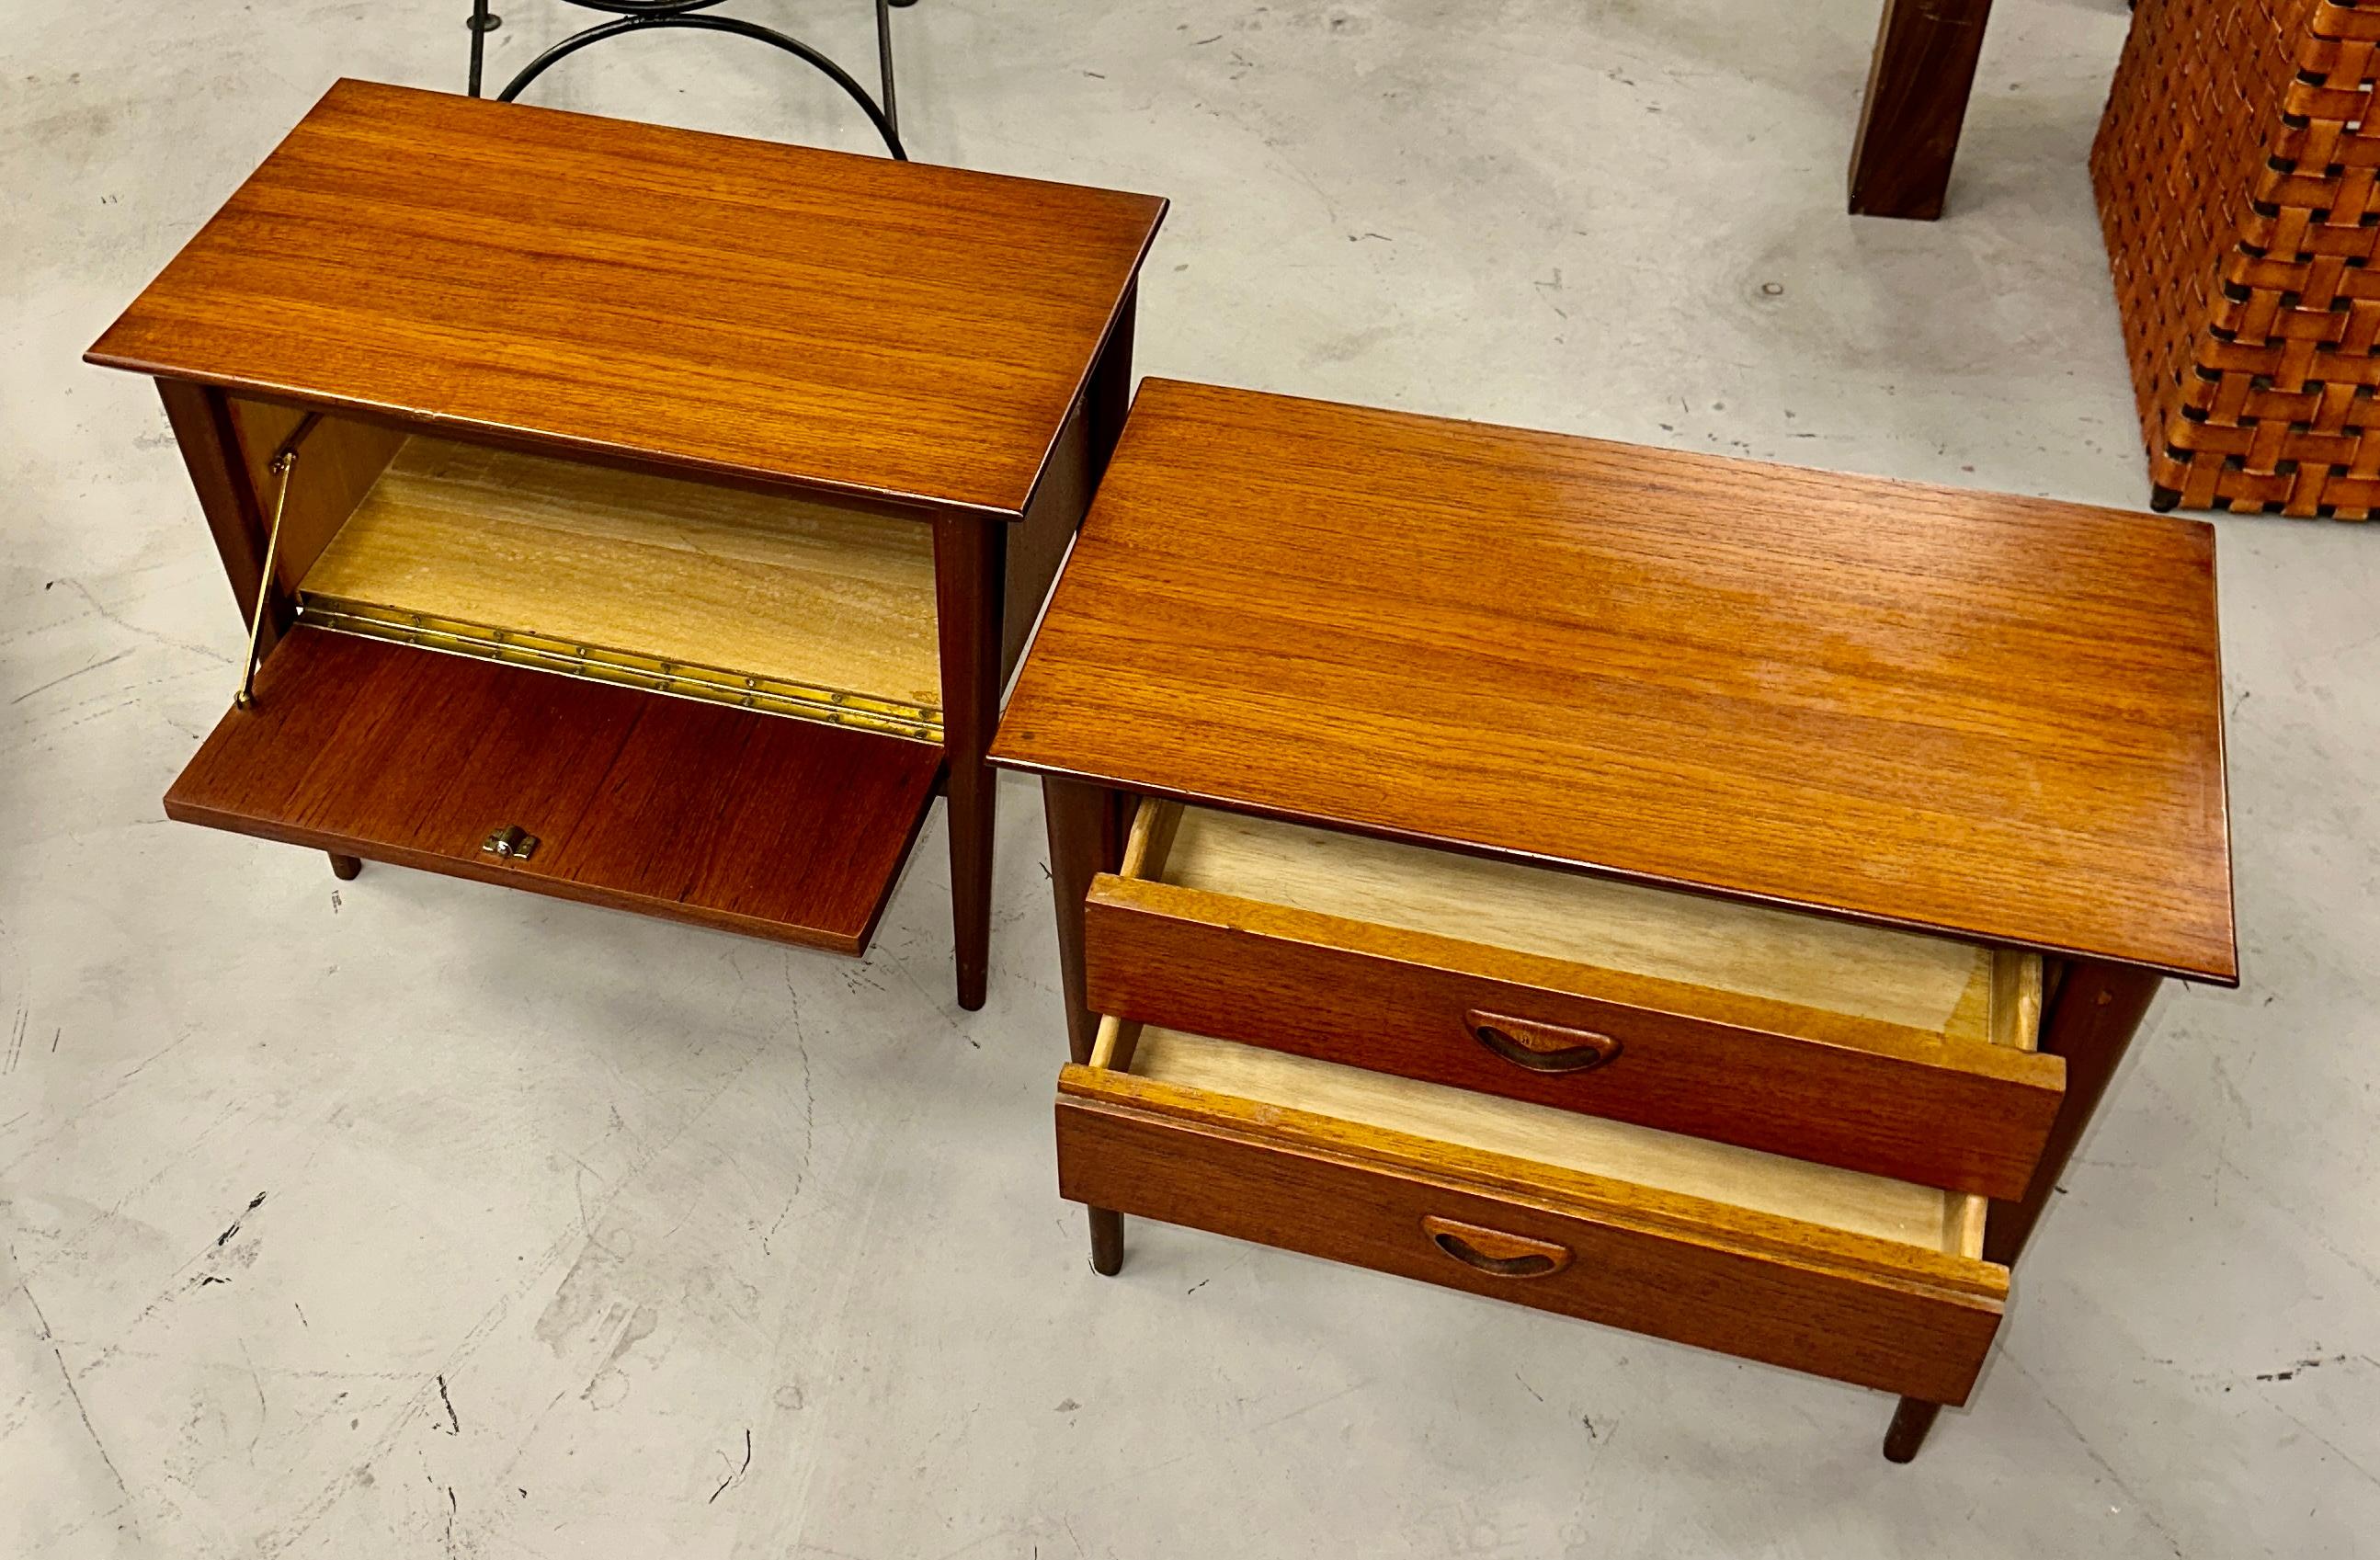 20th Century Pair of Louis Van Teeffelen Teak SIde Tables Nightstands For Sale